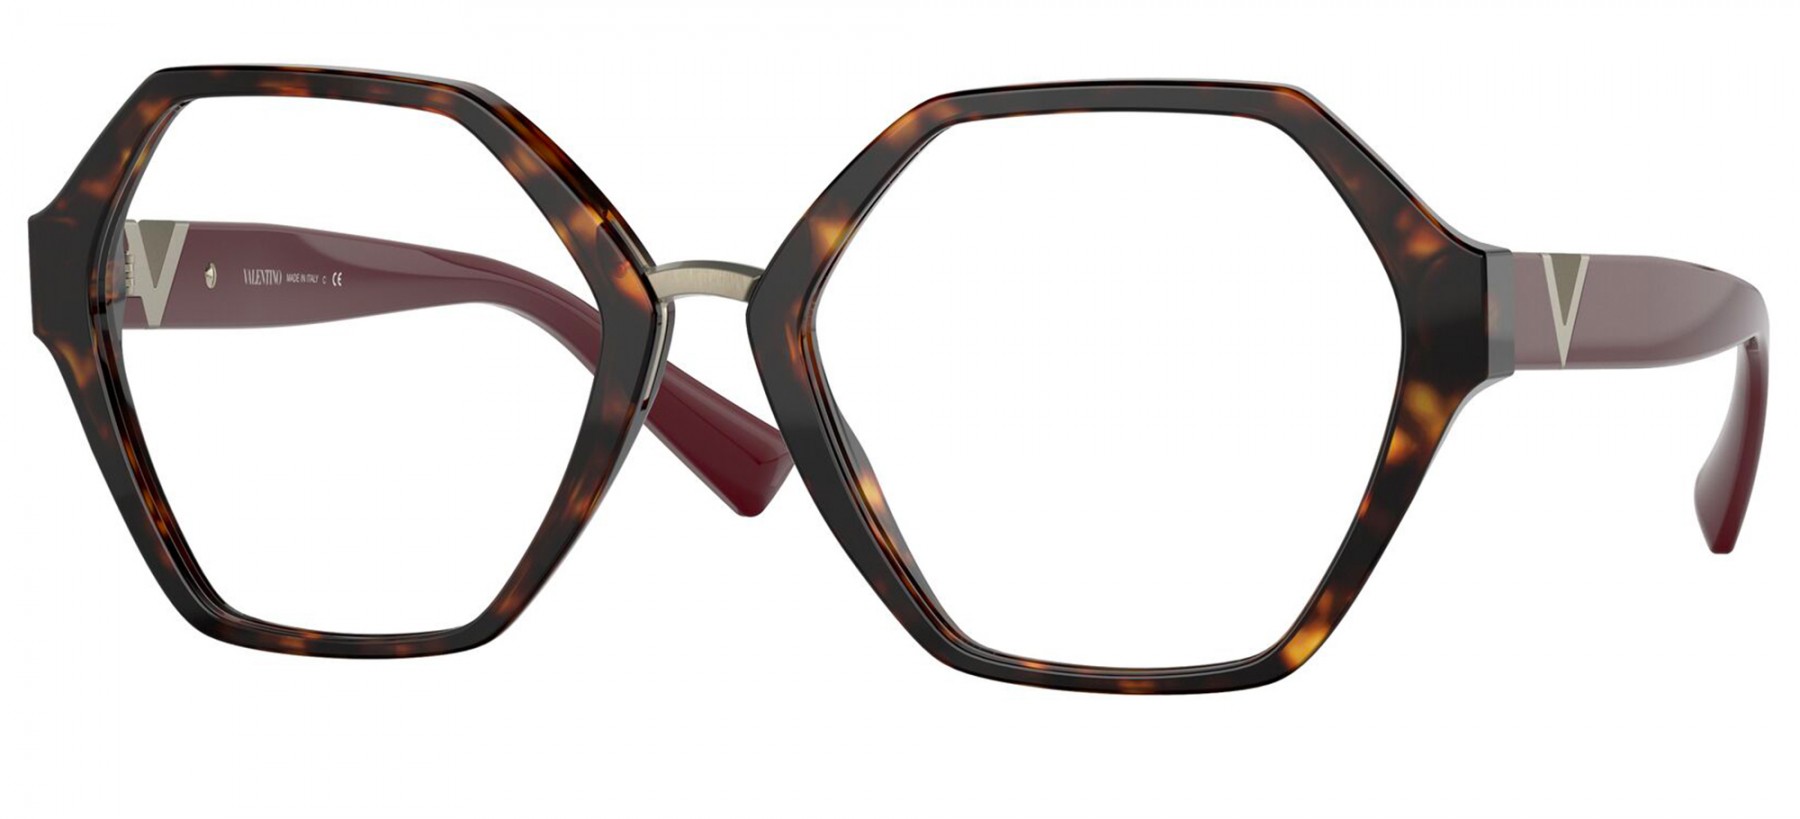 Valentino 3062 5002 - Oculos de Grau